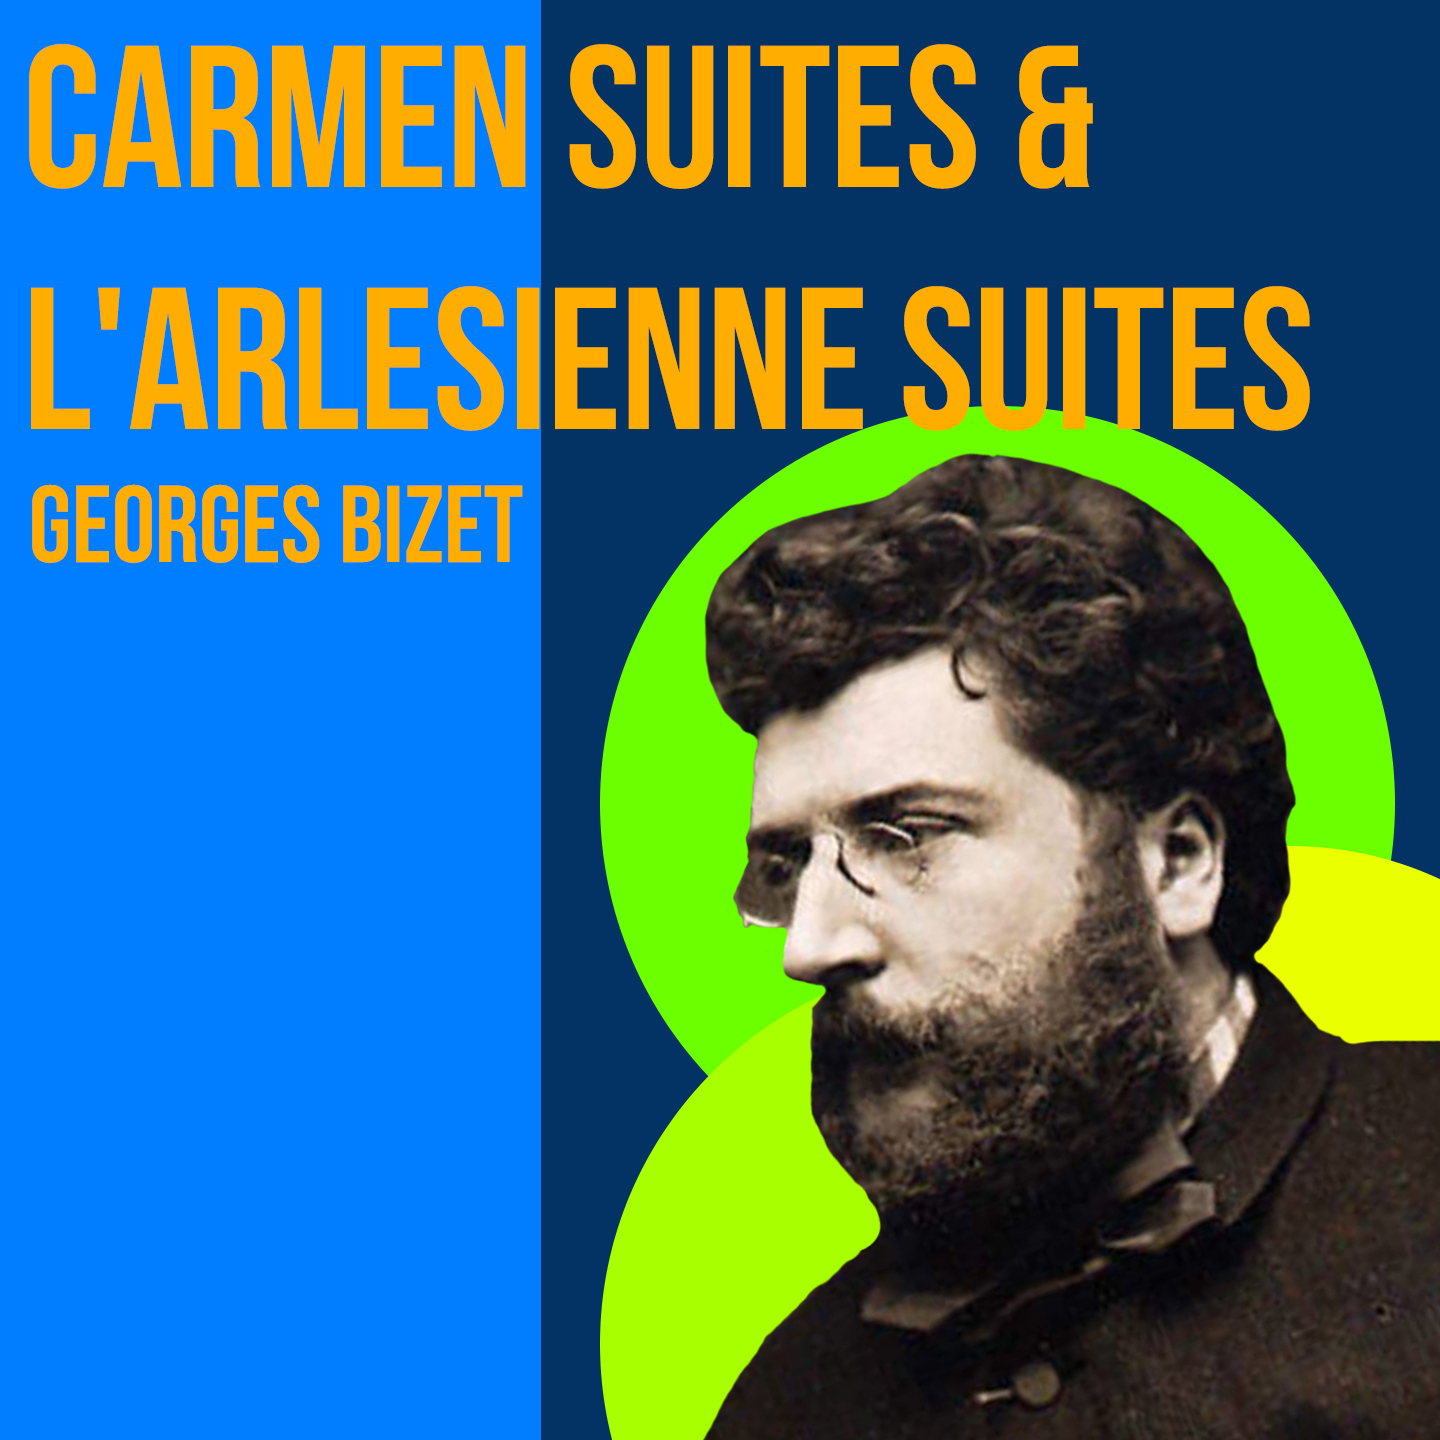 Carmen Suite #2 - Song Of The Toreador